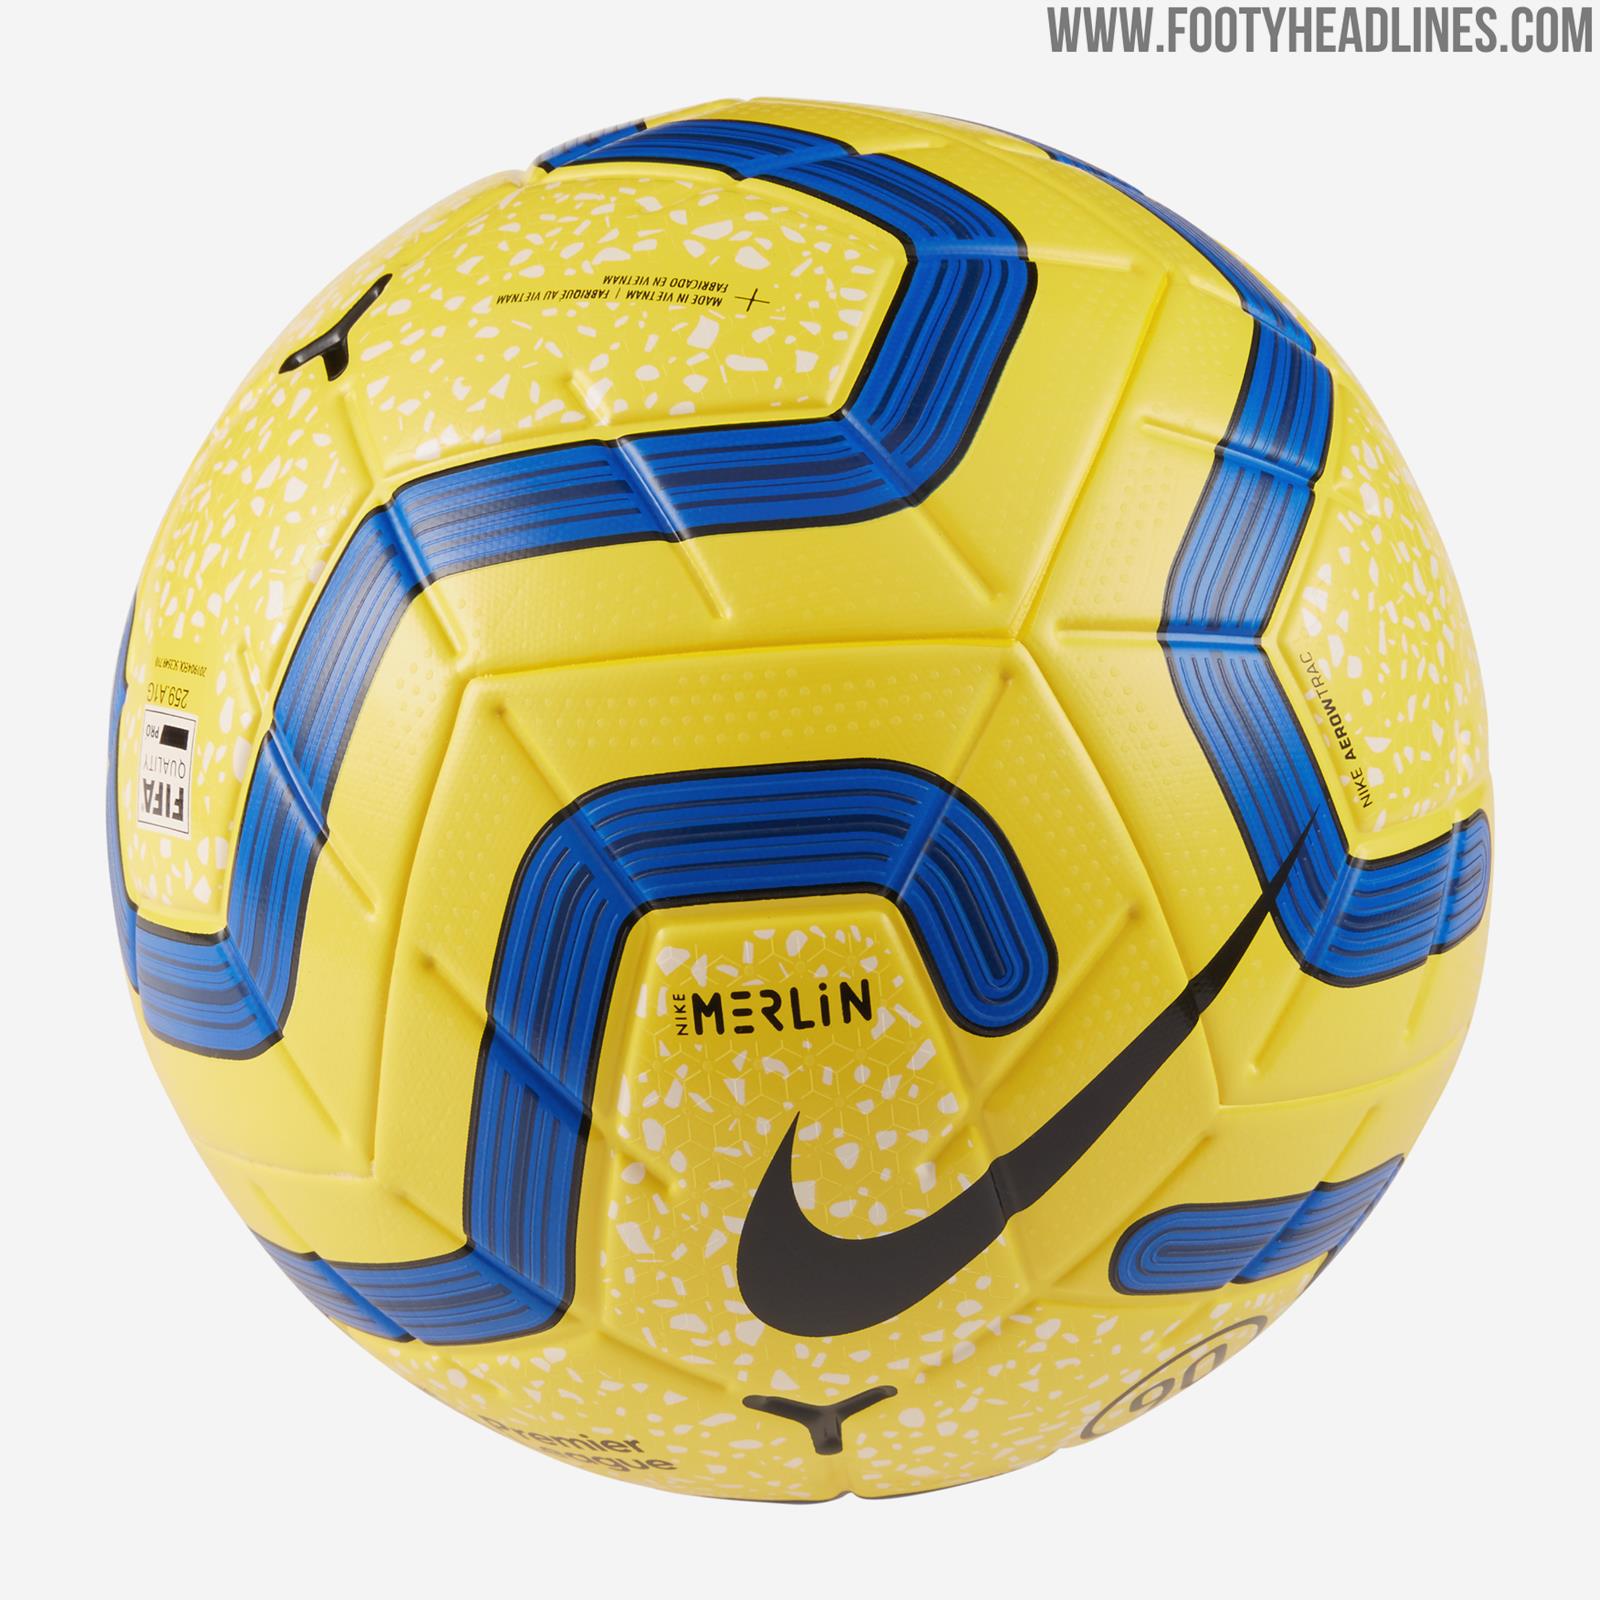 marathon Zielig Atticus Total 90 Logo: Nike Merlin Premier League 19-20 Winter Ball Released -  Footy Headlines